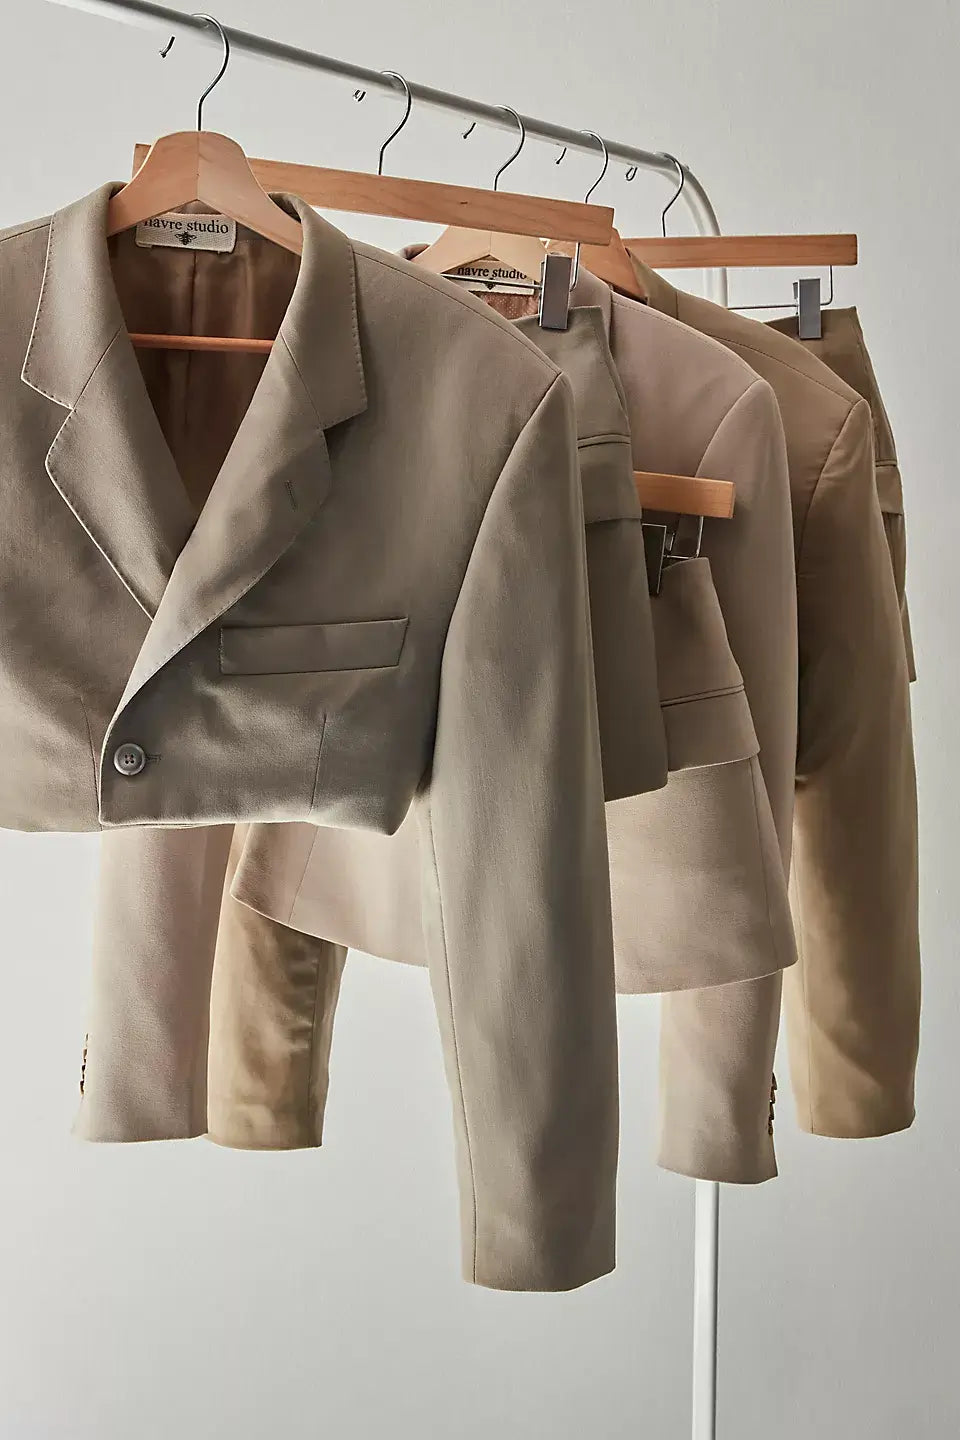 Havre skirt suit